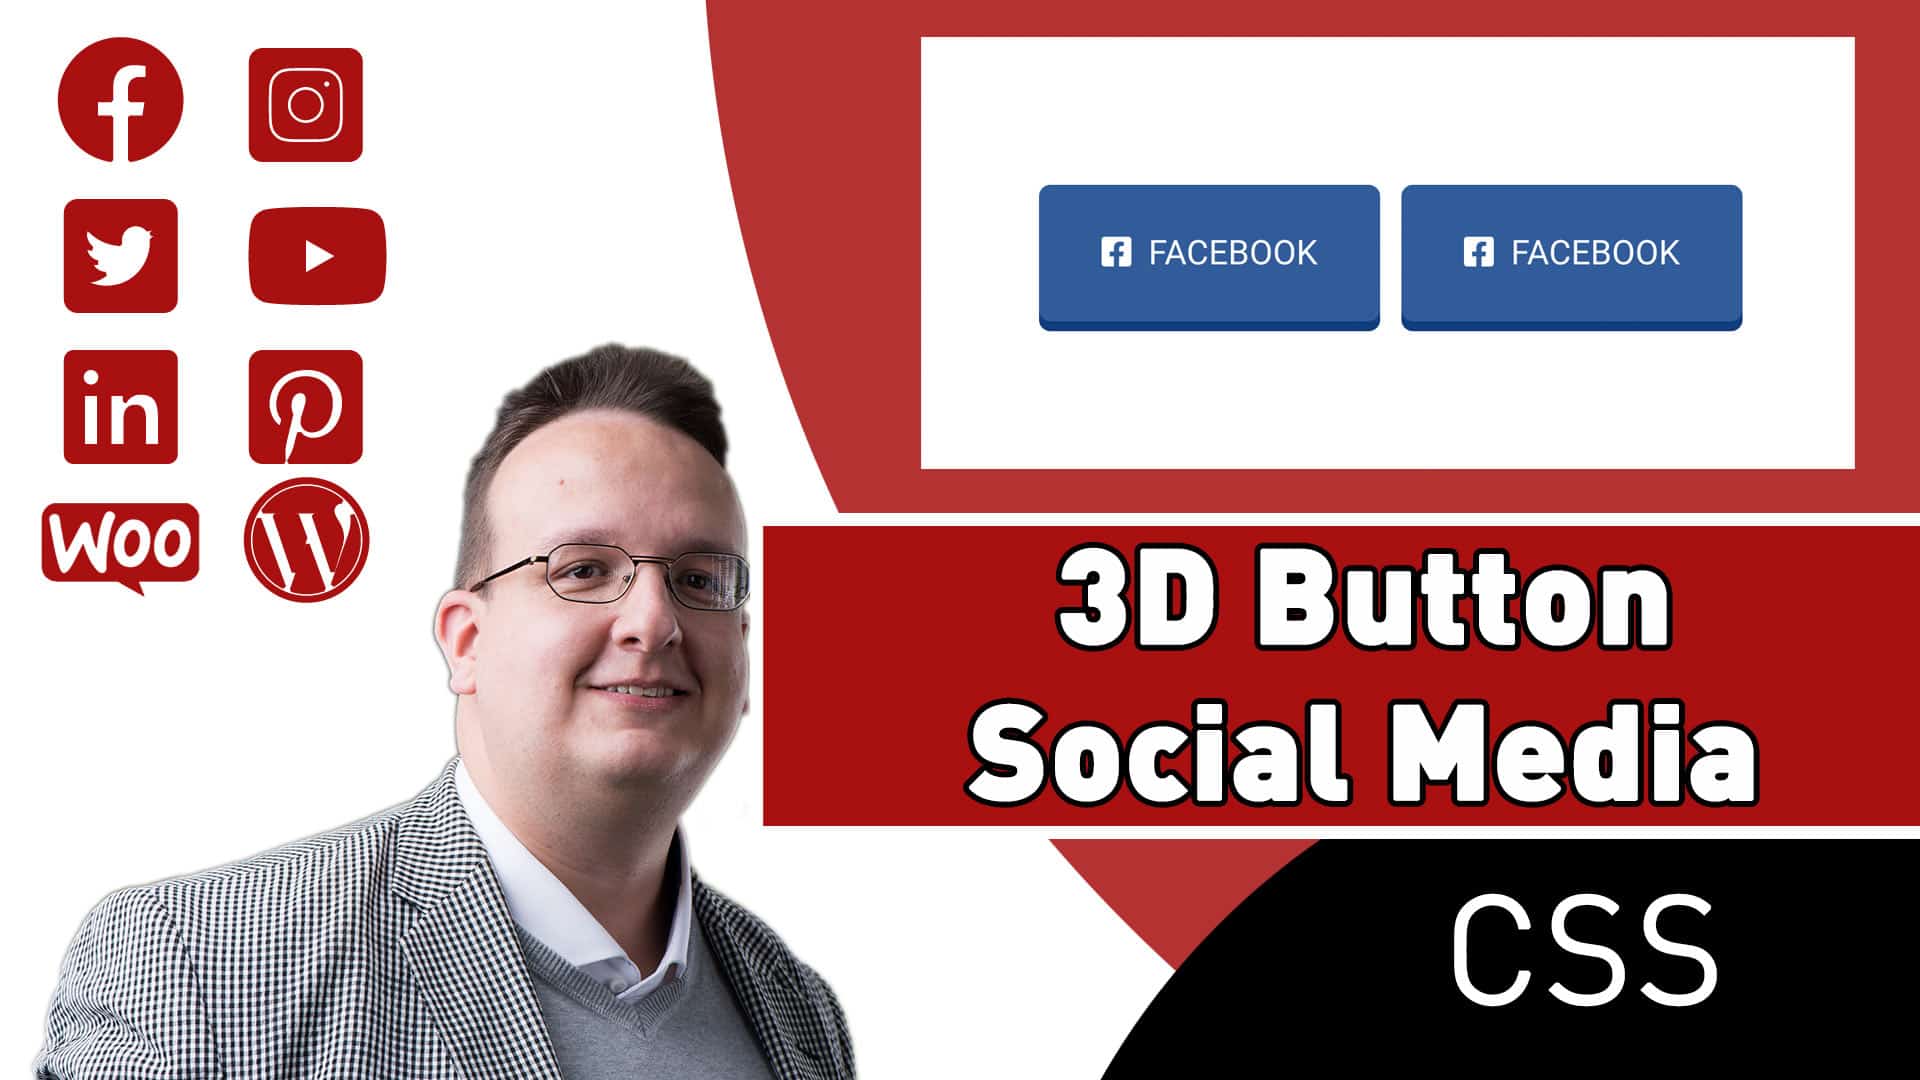 Wie erstelle ich einen 3D Social Media Button?